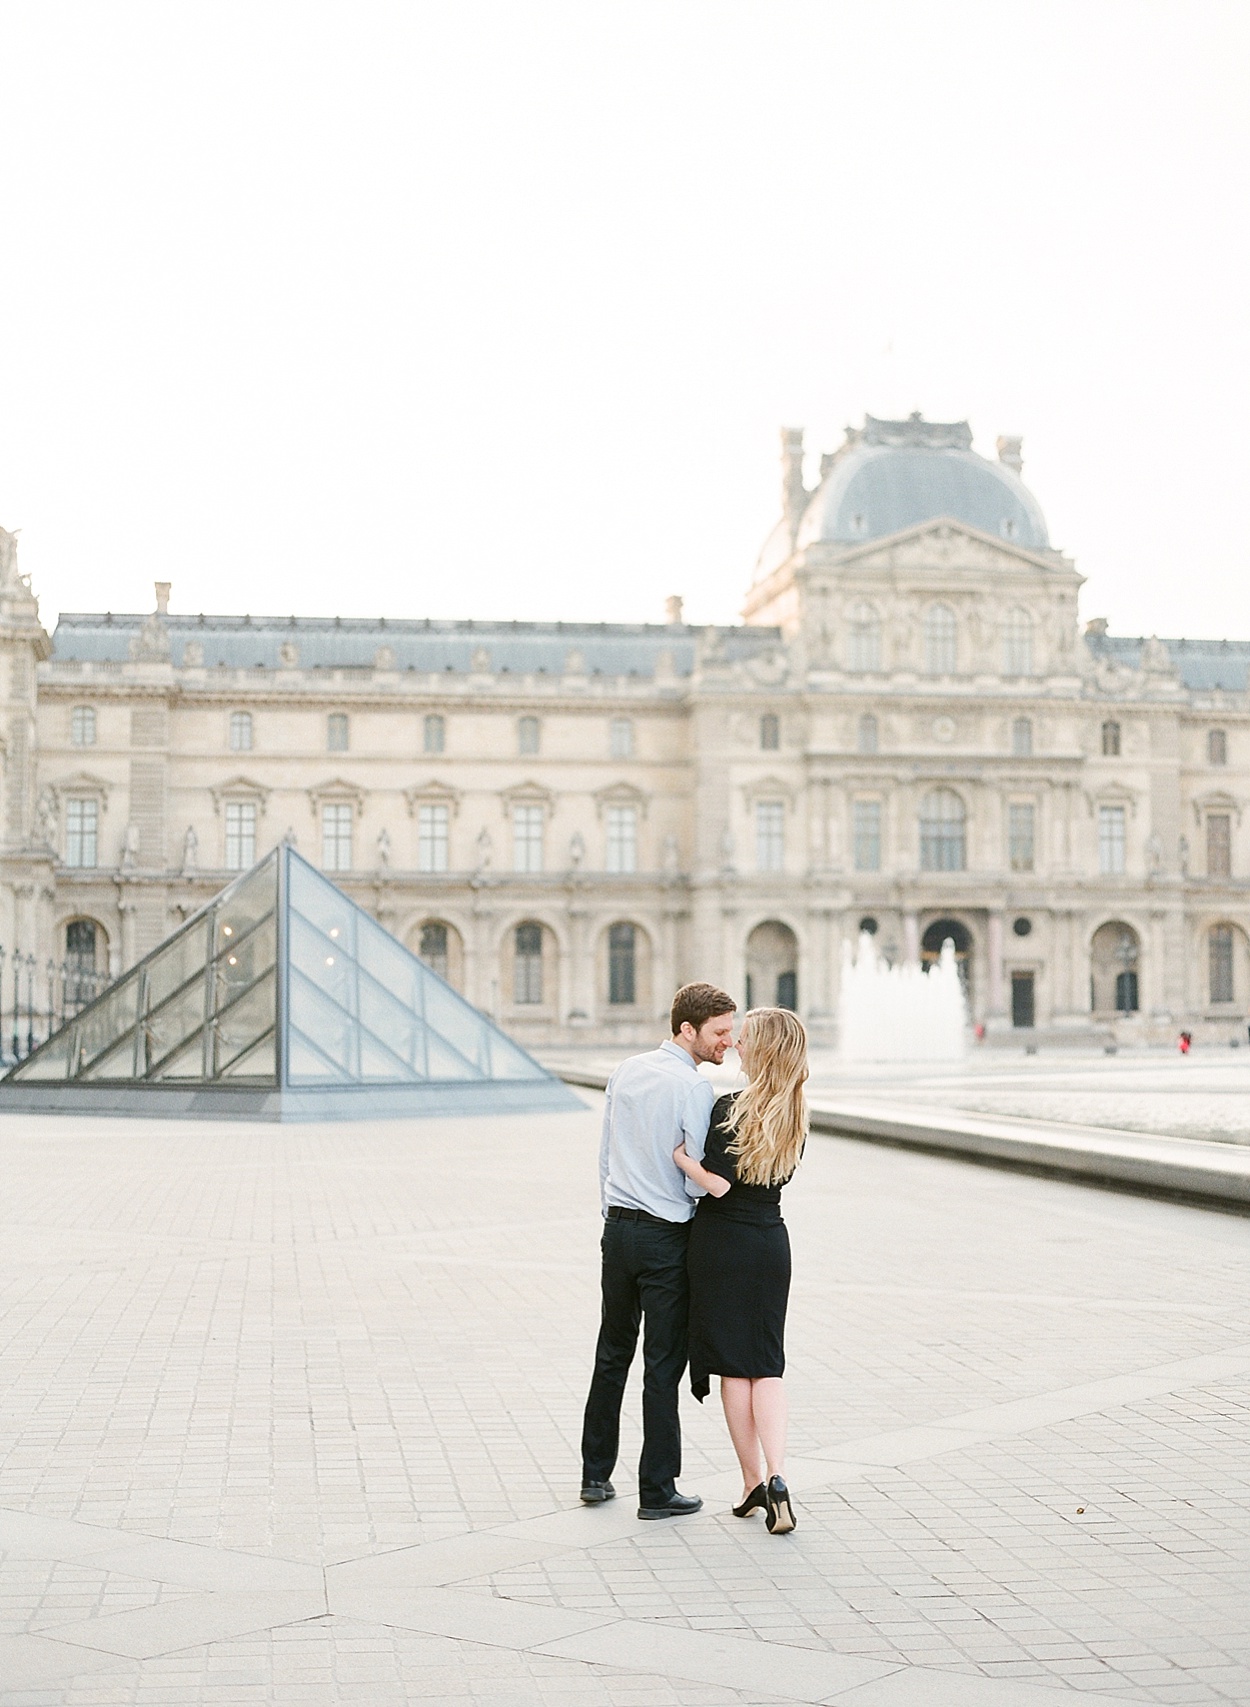 romantic Paris, France portraits at Musée du Louvre | Abby Grace Photography